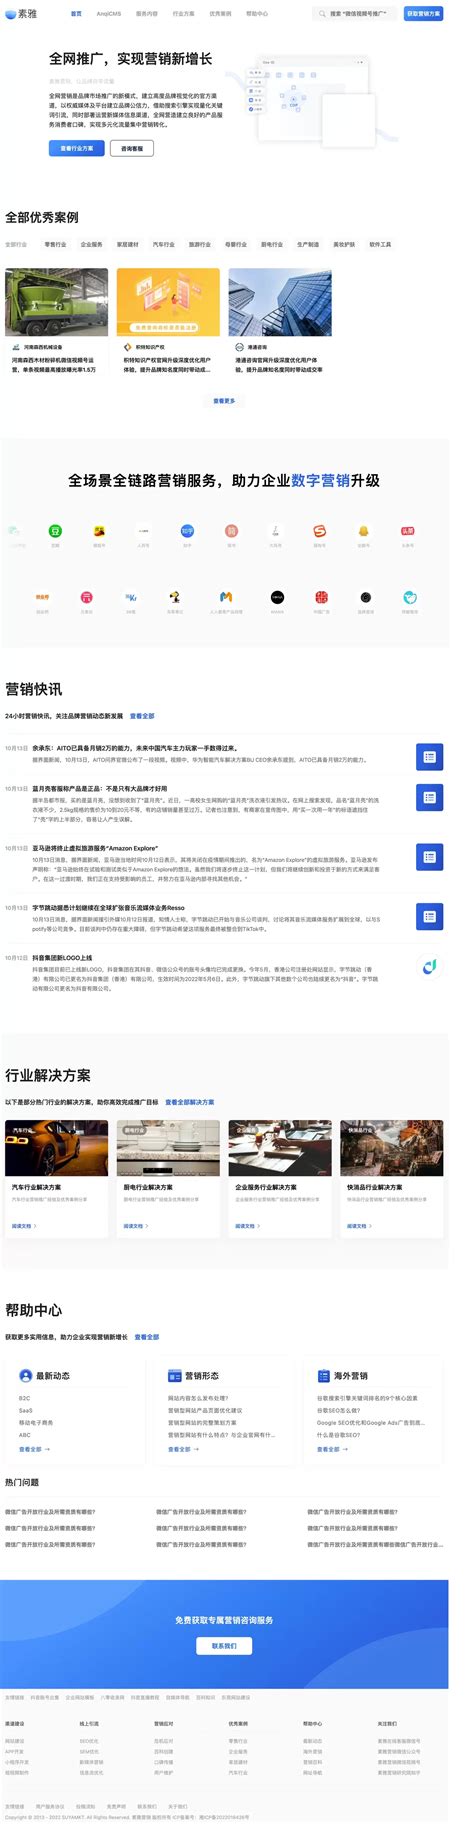 武汉定制网站建设营销